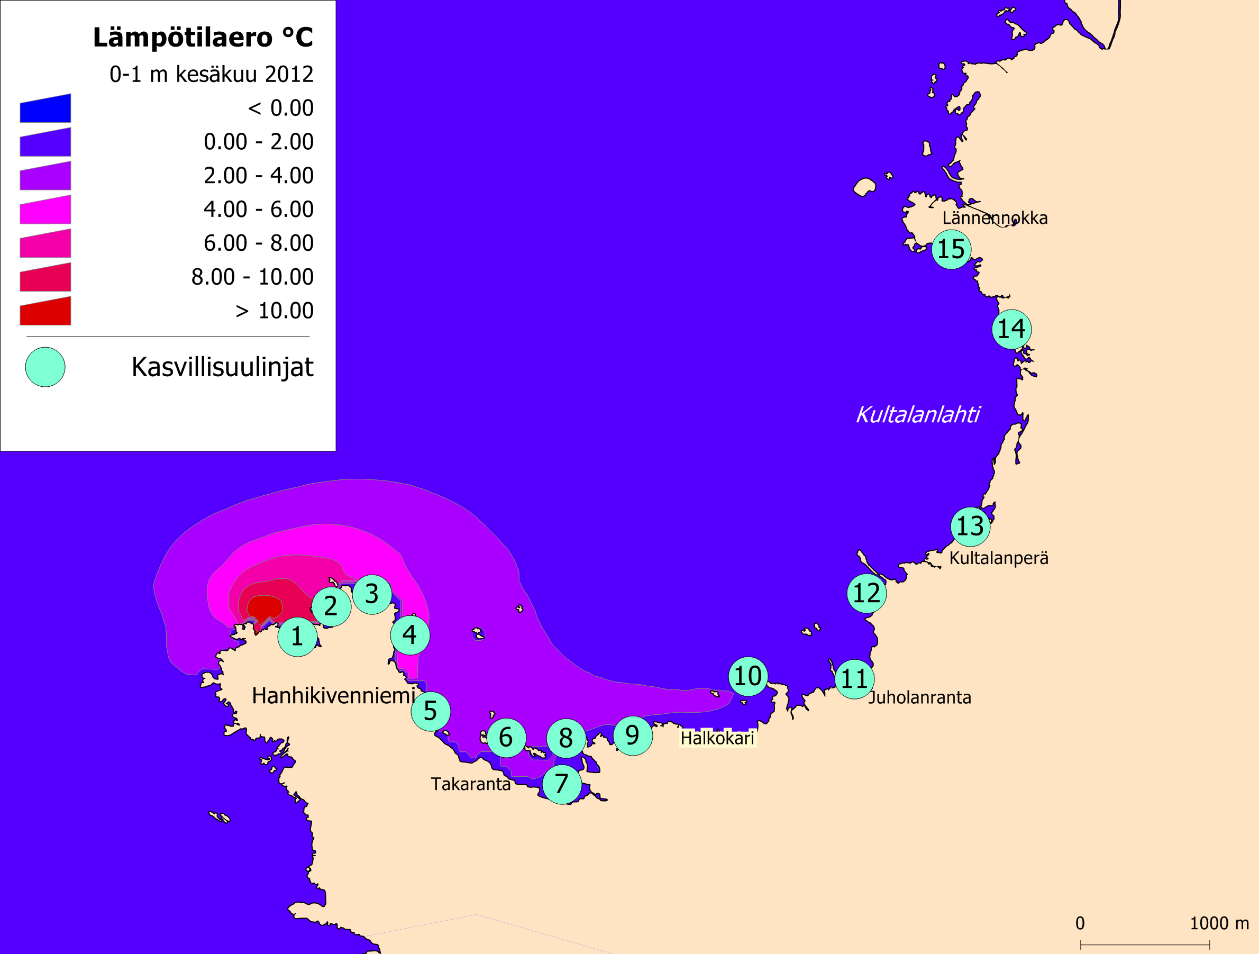 Meriveden lämpötila nousi mallin mukaan yli kymmenen astetta jäähdytysvesien purkuputken suulla Hanhikivenniemessä (kuva 2).